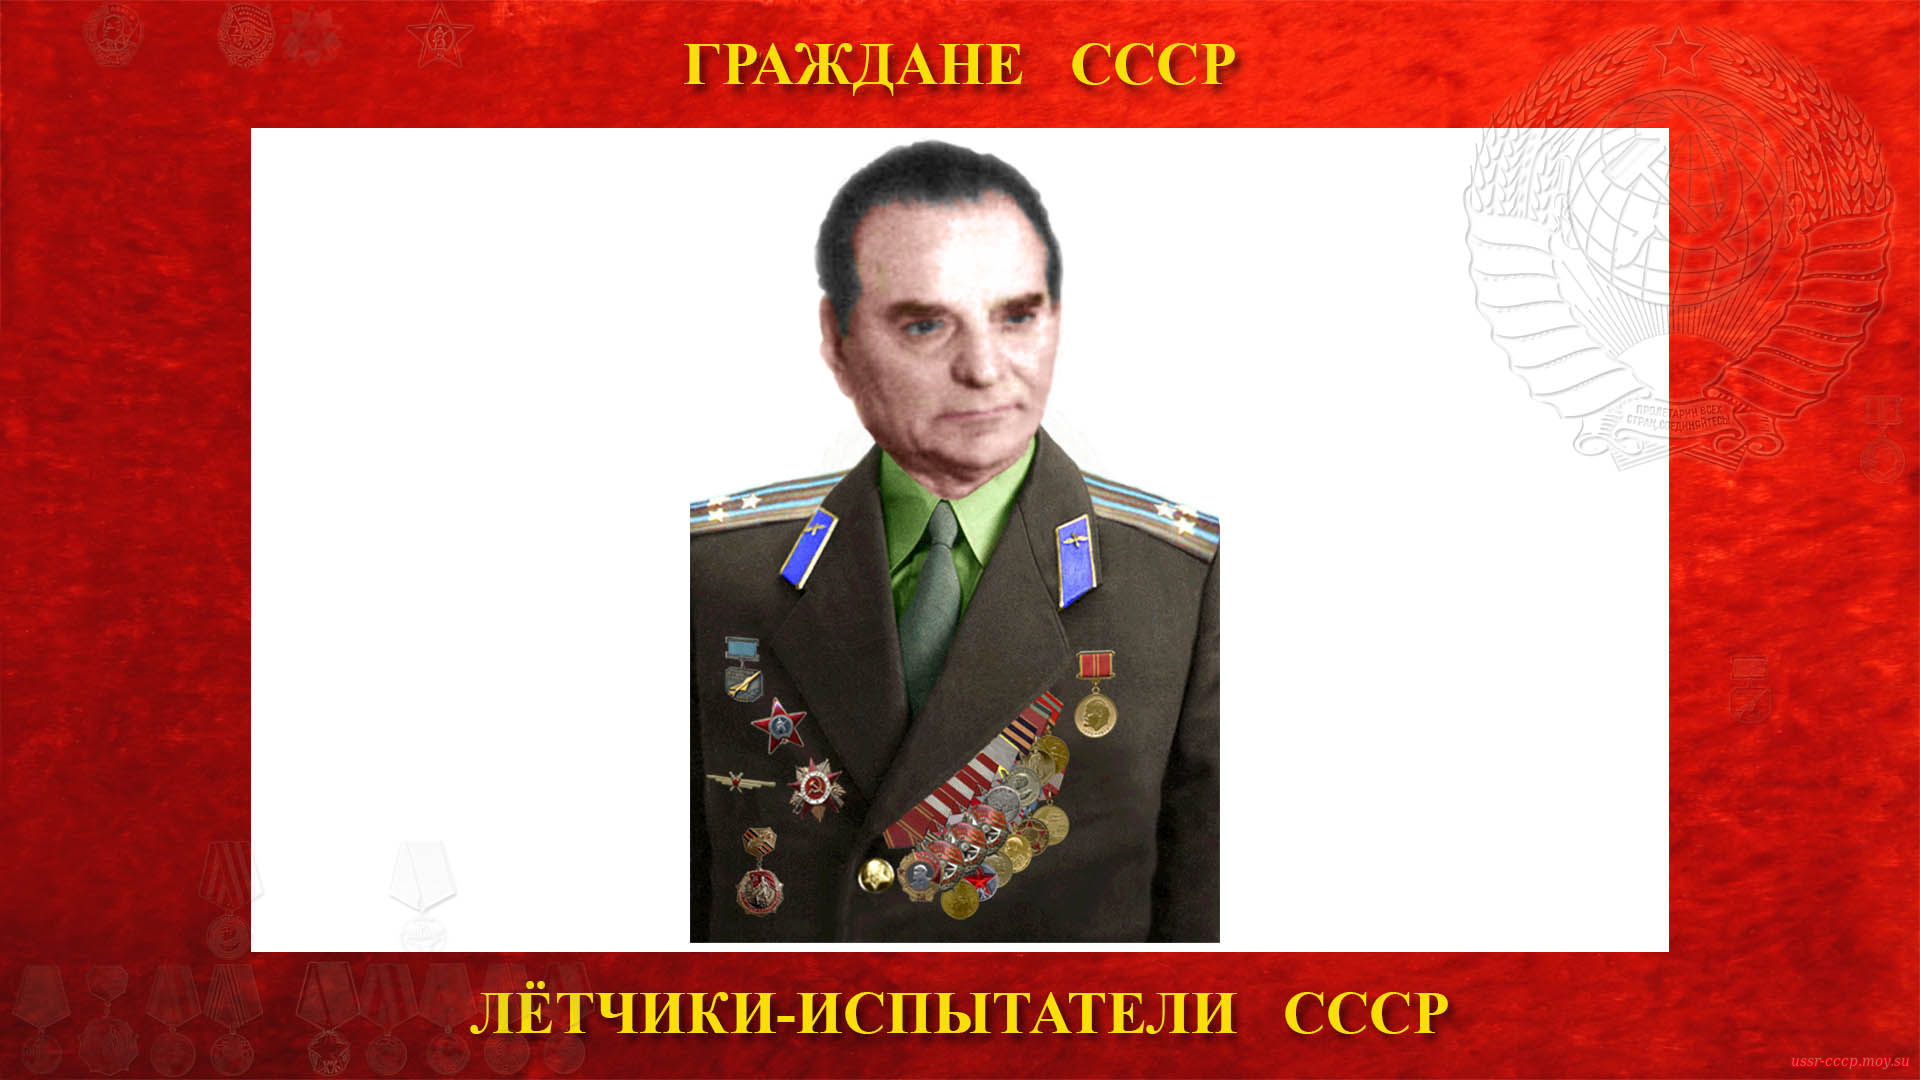 Коробко Григорий Яковлевич (биография)